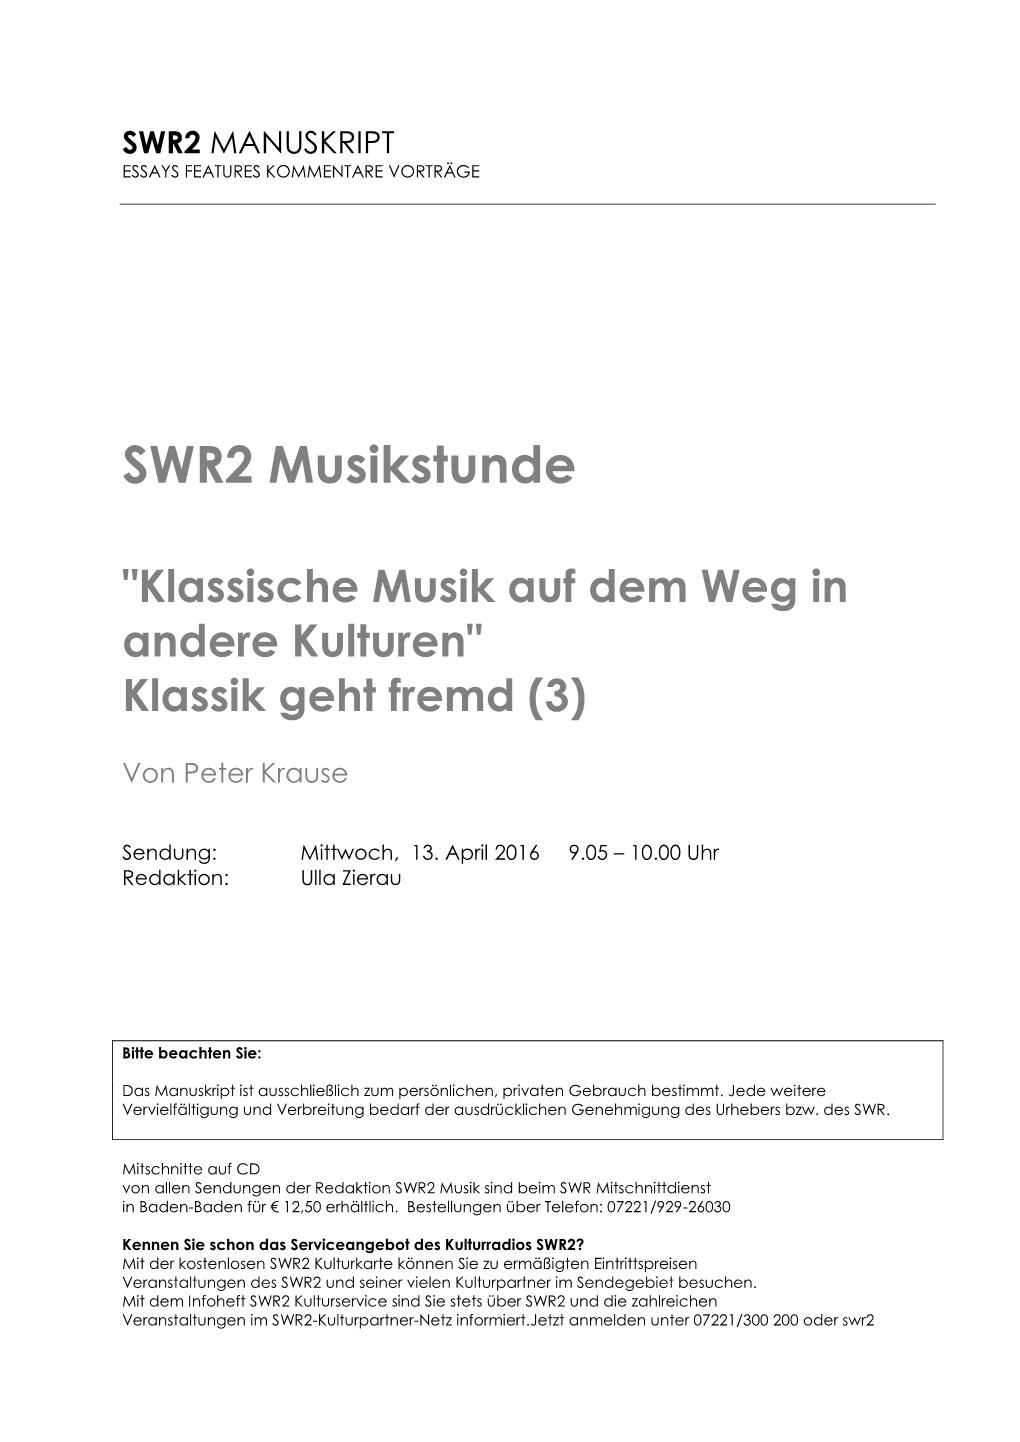 SWR2 Musikstunde